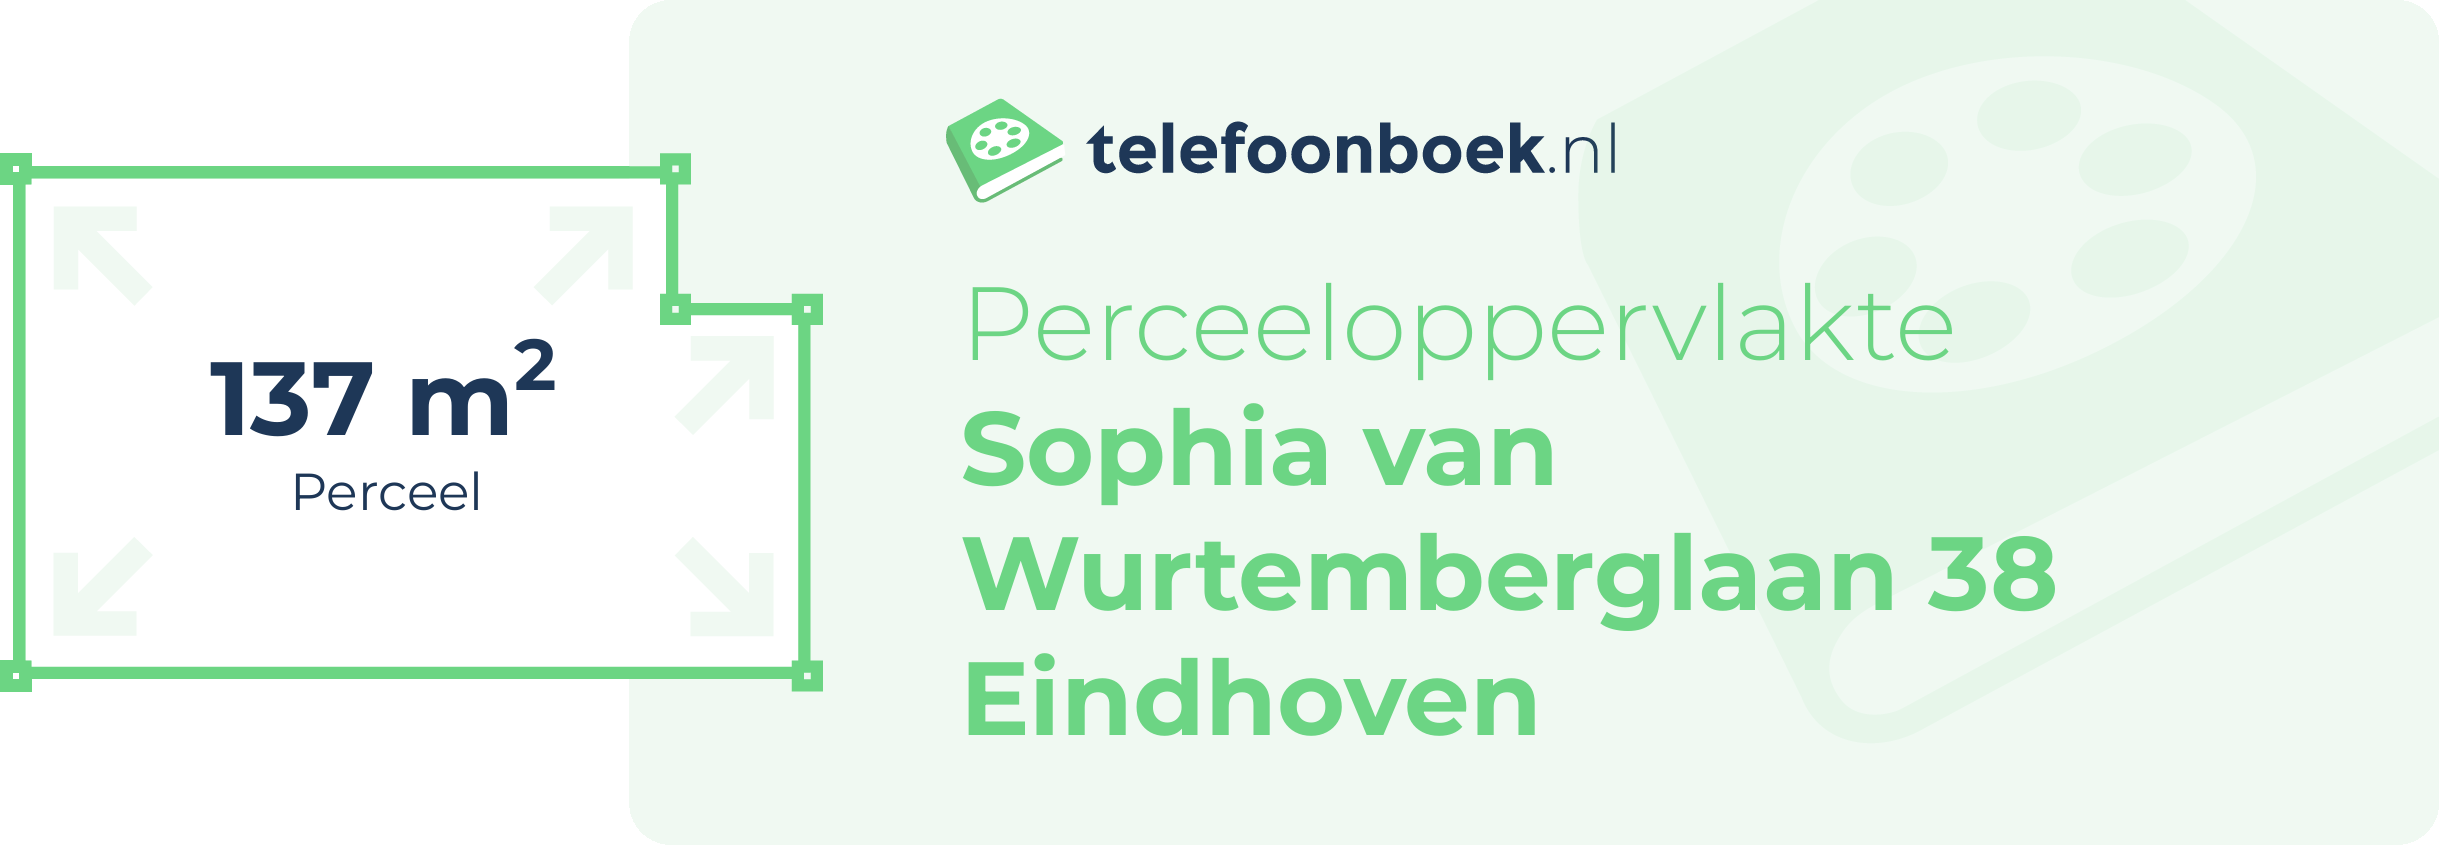 Perceeloppervlakte Sophia Van Wurtemberglaan 38 Eindhoven